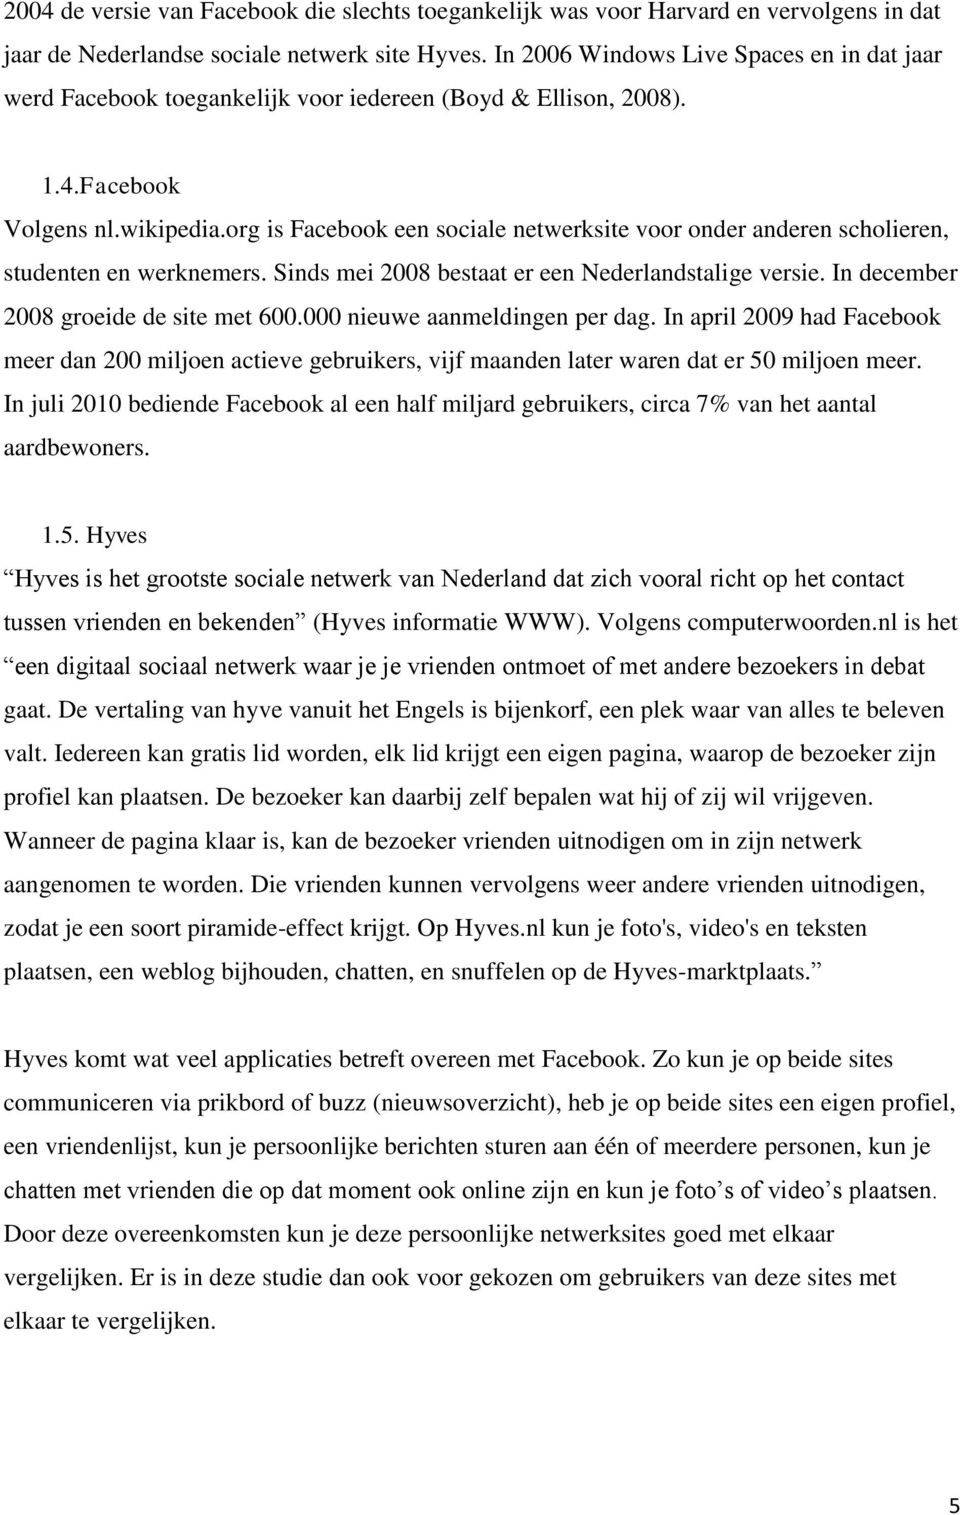 org is Facebook een sociale netwerksite voor onder anderen scholieren, studenten en werknemers. Sinds mei 2008 bestaat er een Nederlandstalige versie. In december 2008 groeide de site met 600.